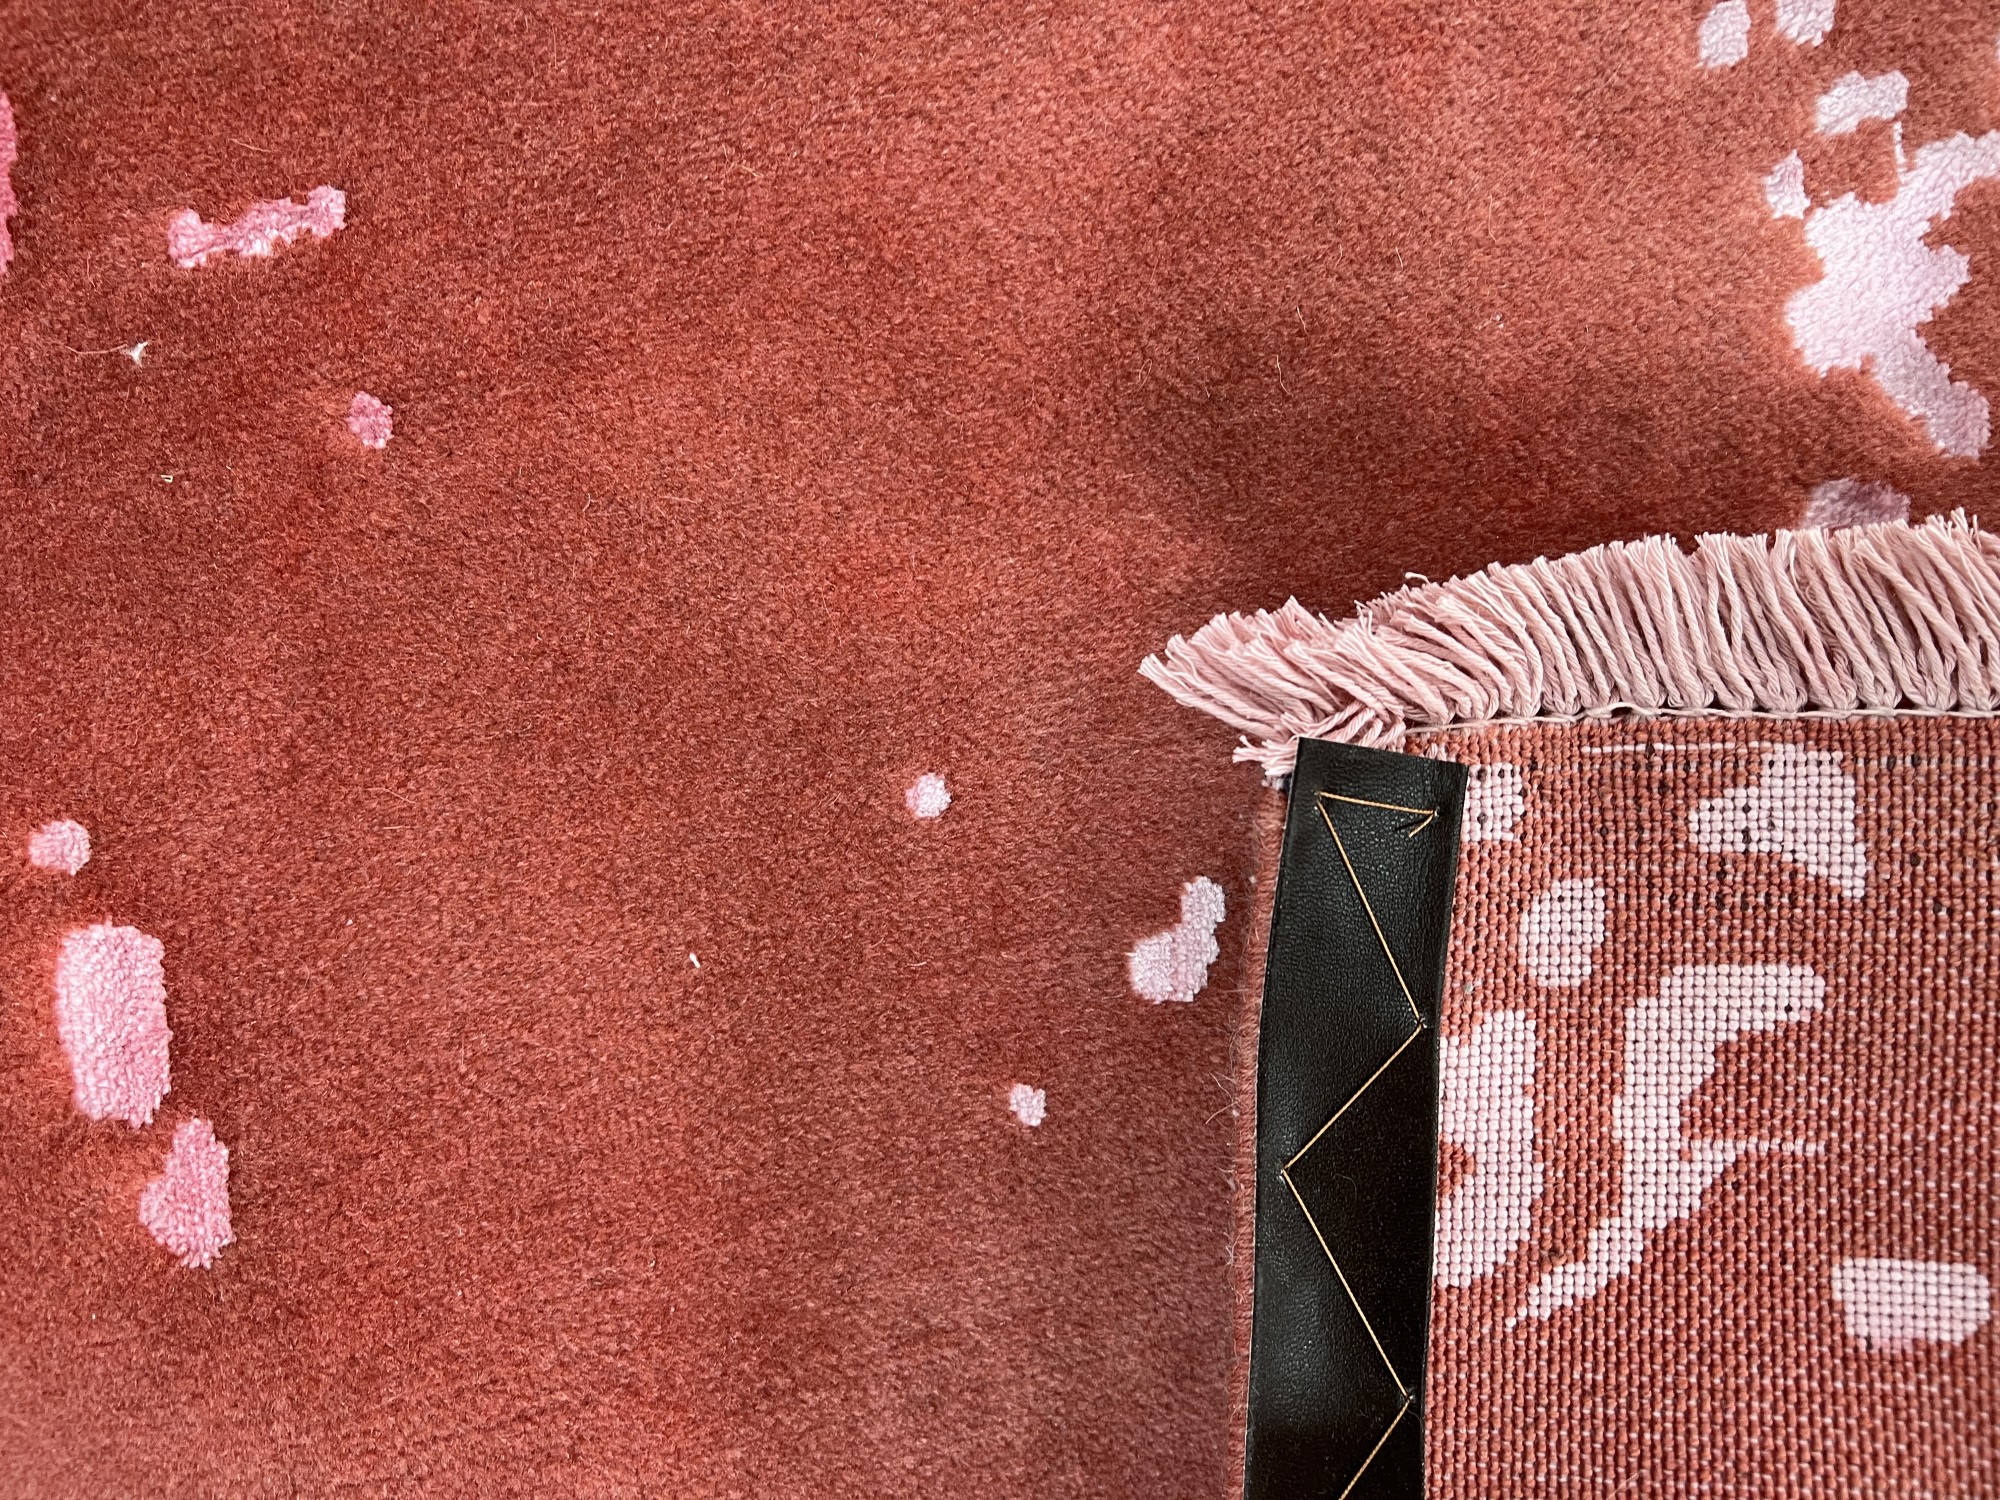 فرش پشمی ماشینی طبیعی و ارگانیک کد 0097 - زمینه صورتی - حاشیه صورتی